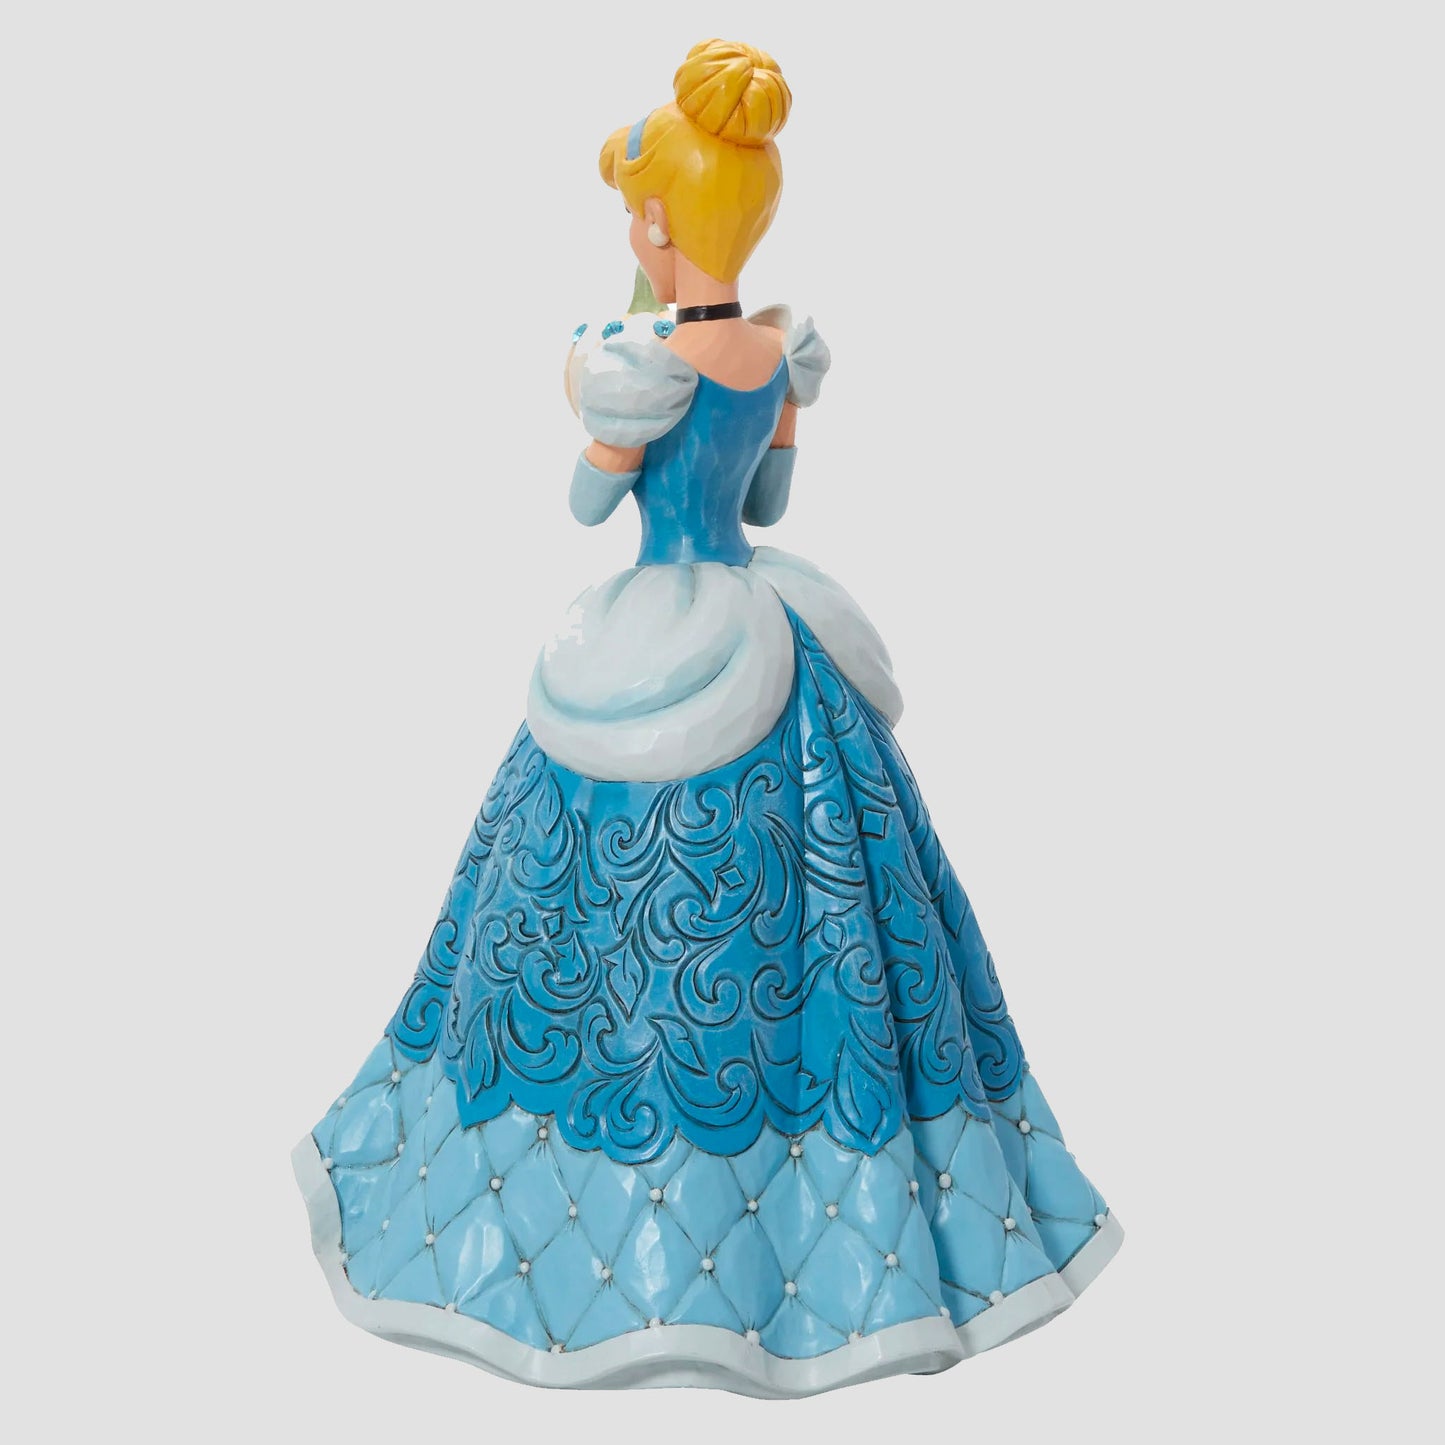 Cinderella "The Iconic Pumpkin" (Cinderella) Deluxe Disney Traditions Statue